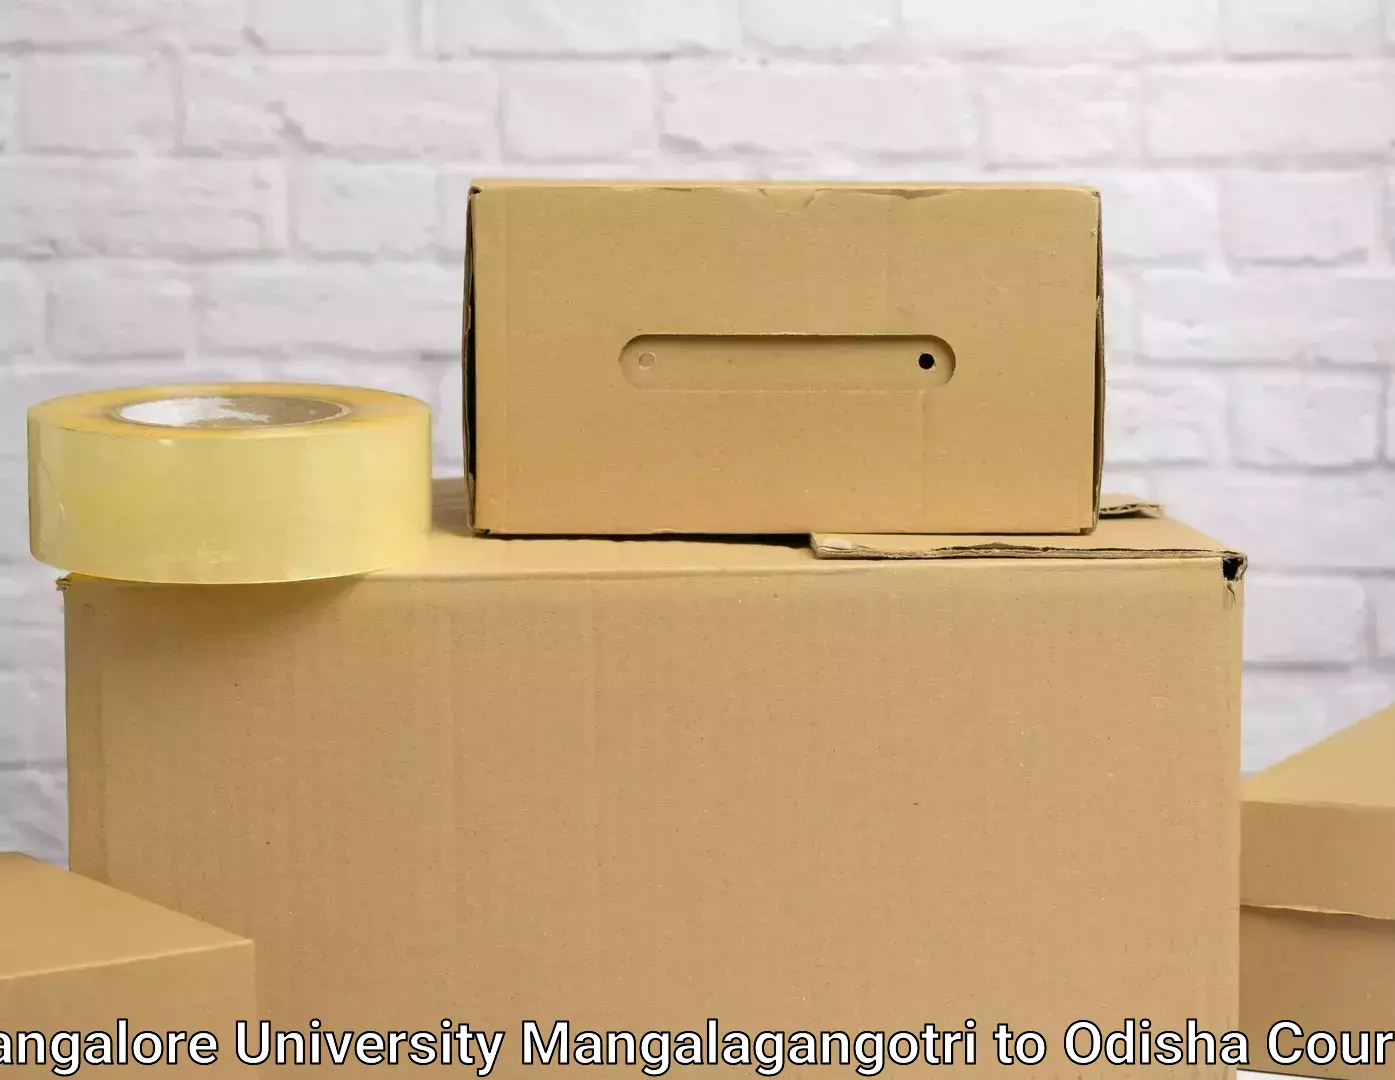 Professional furniture shifting Mangalore University Mangalagangotri to Tikiri